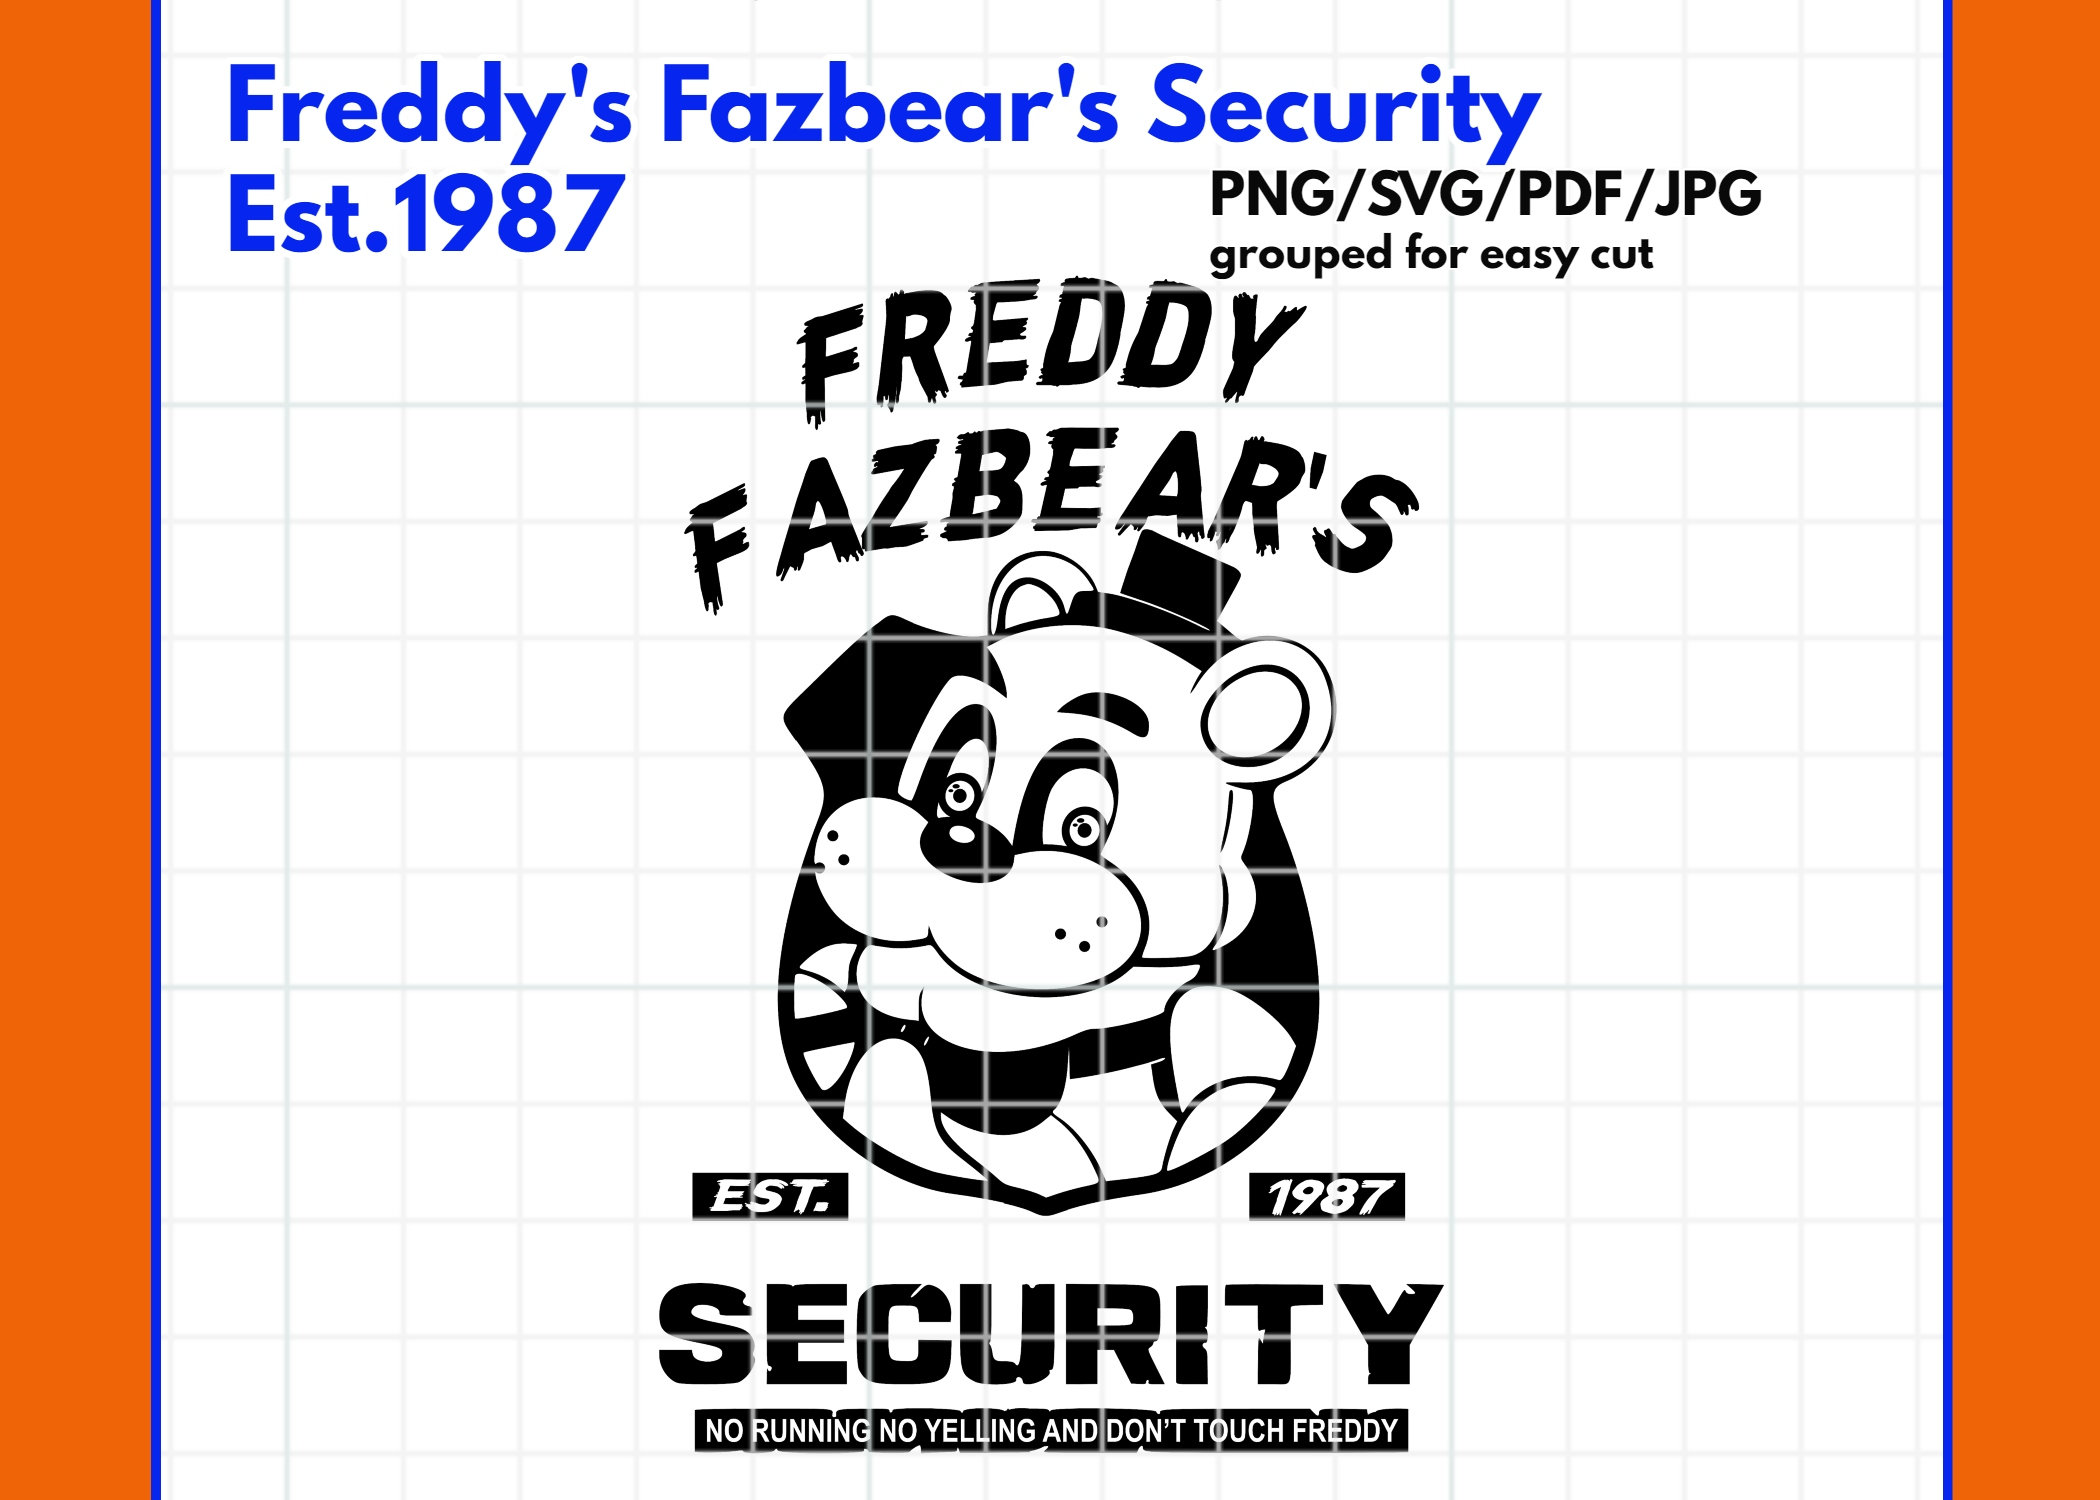 Freddy Fazbear's Pizza (1987) Outside view